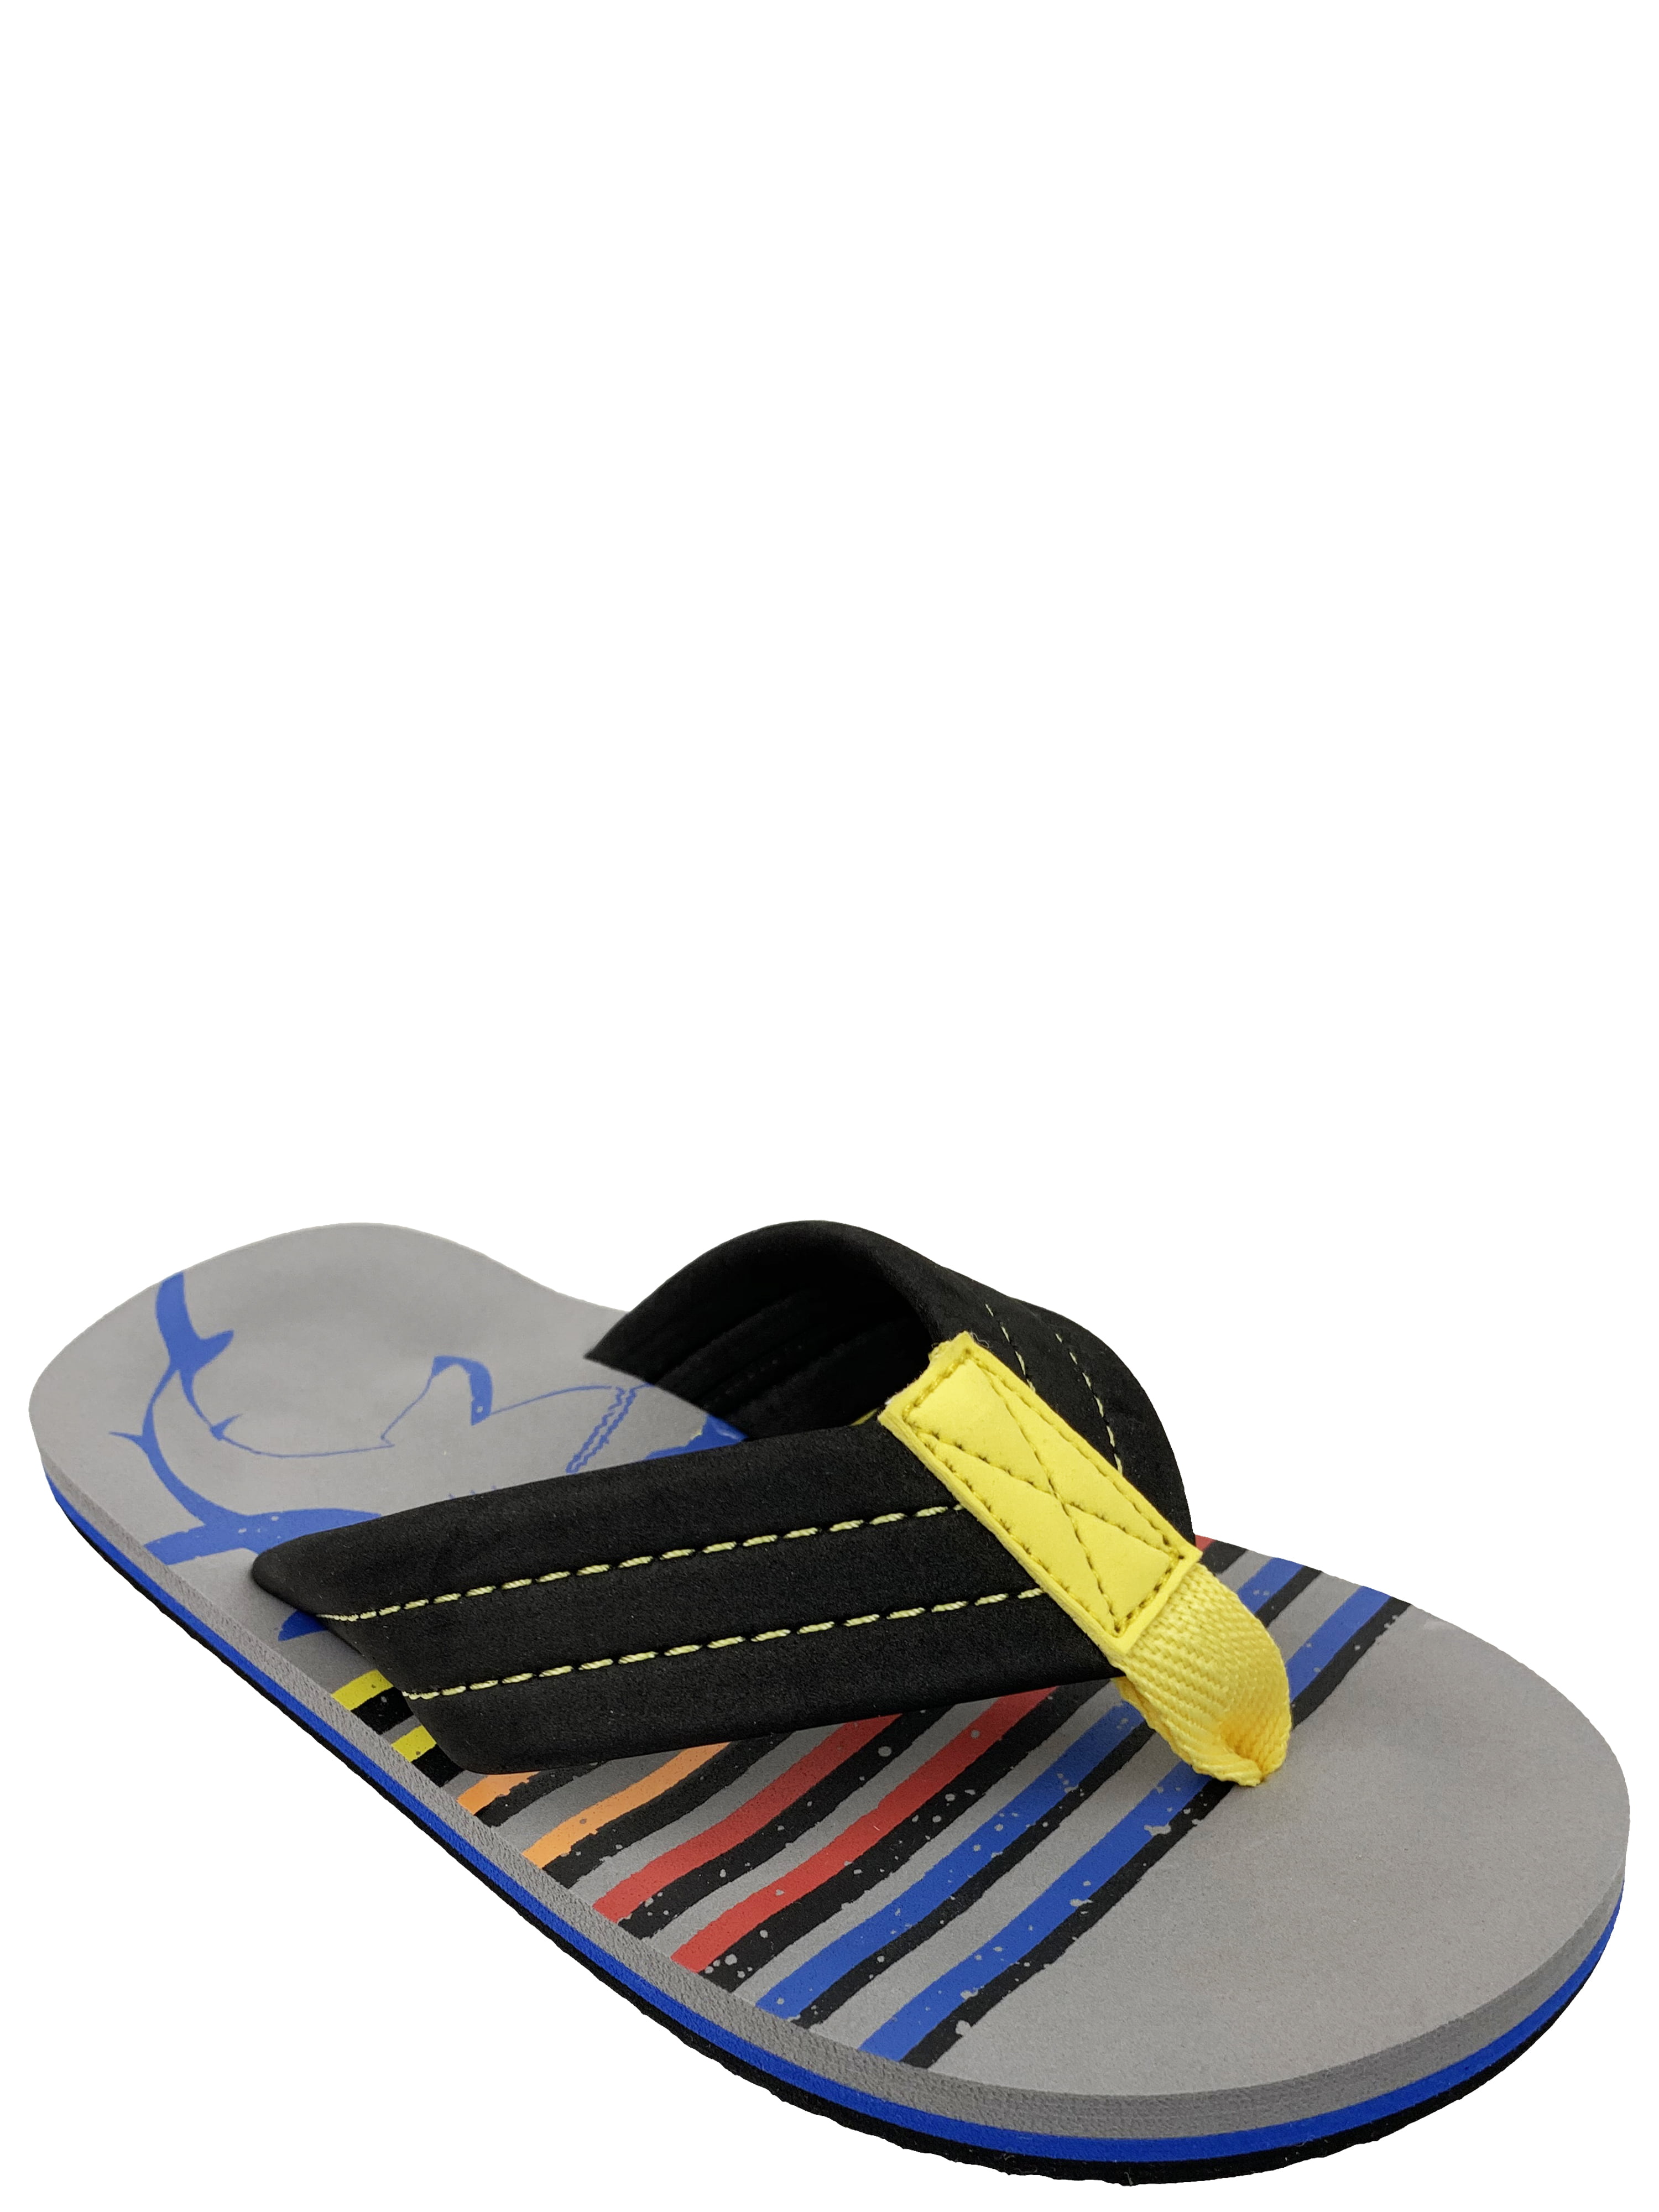 Boys' Flip Flop Sandal, Sunset Colored 